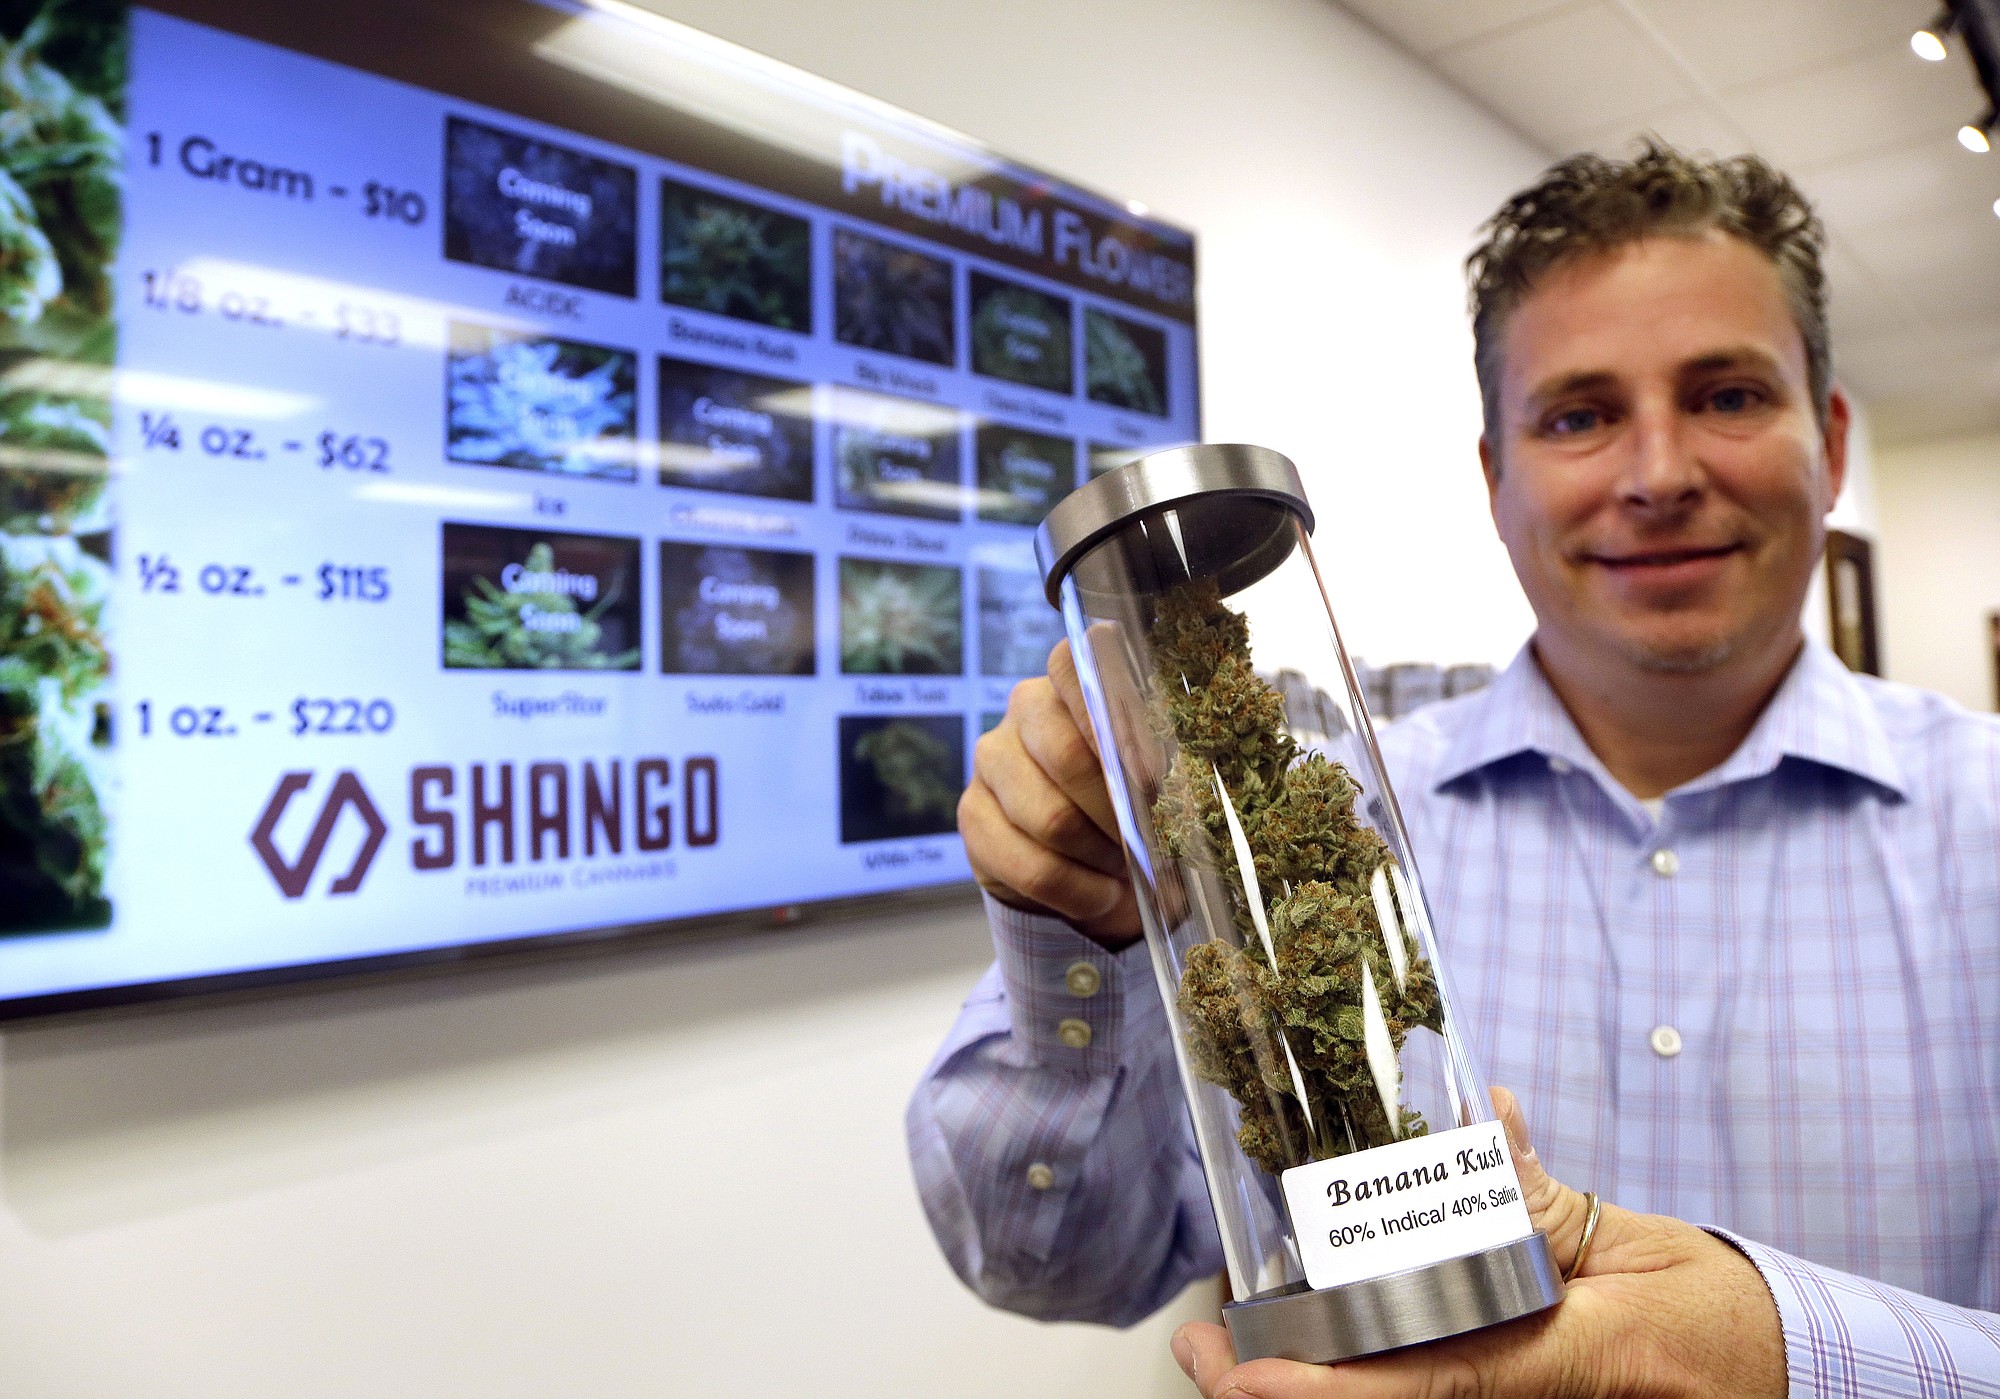 Shane McKee, co-founder of Shango Premium Cannabis dispensary